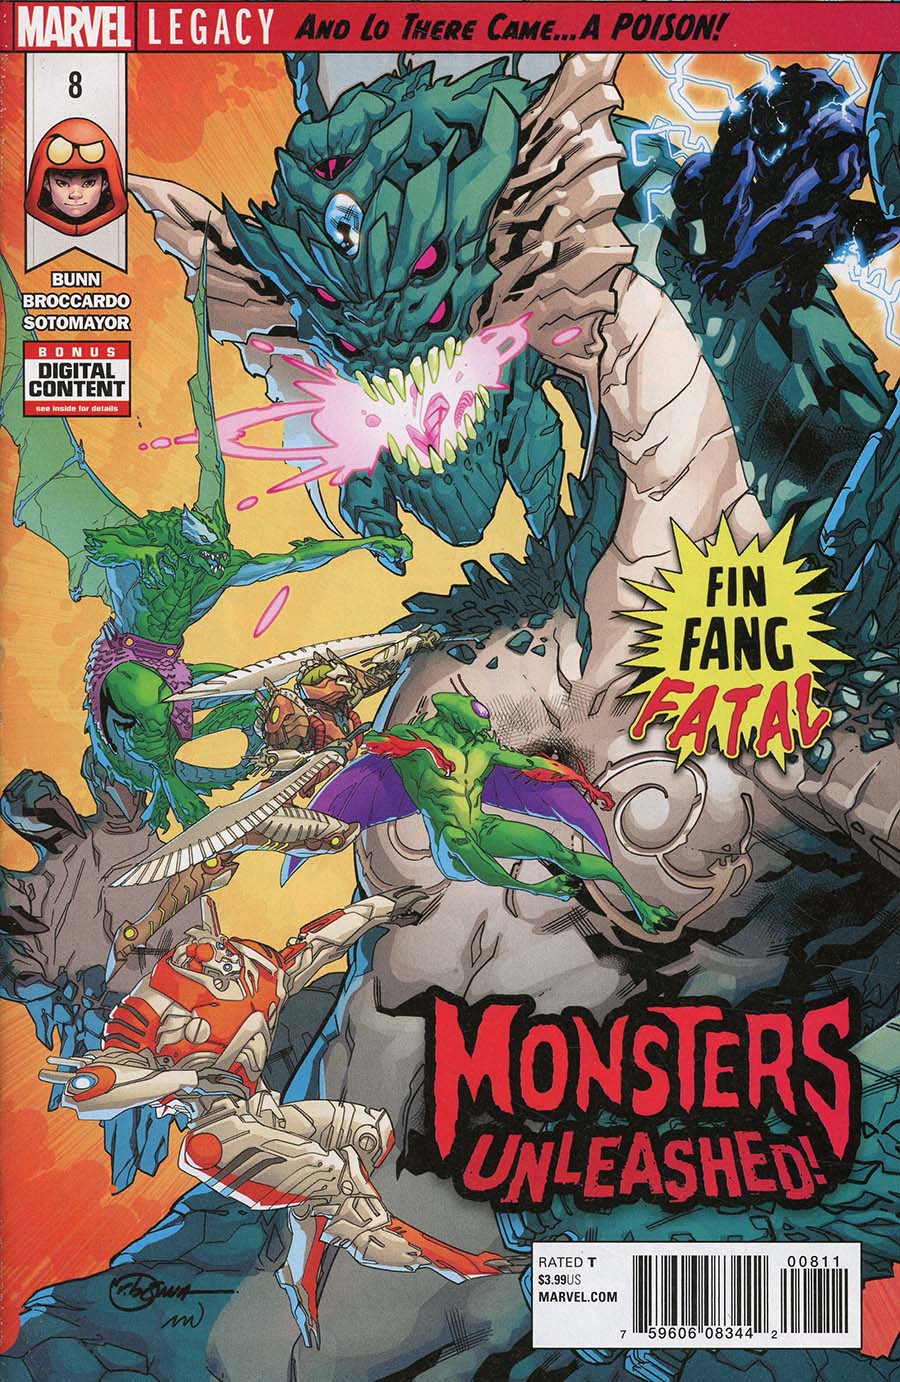 Monsters Unleashed Vol 2 #8 (Venomverse Tie-In)(Marvel Legacy Tie-In)